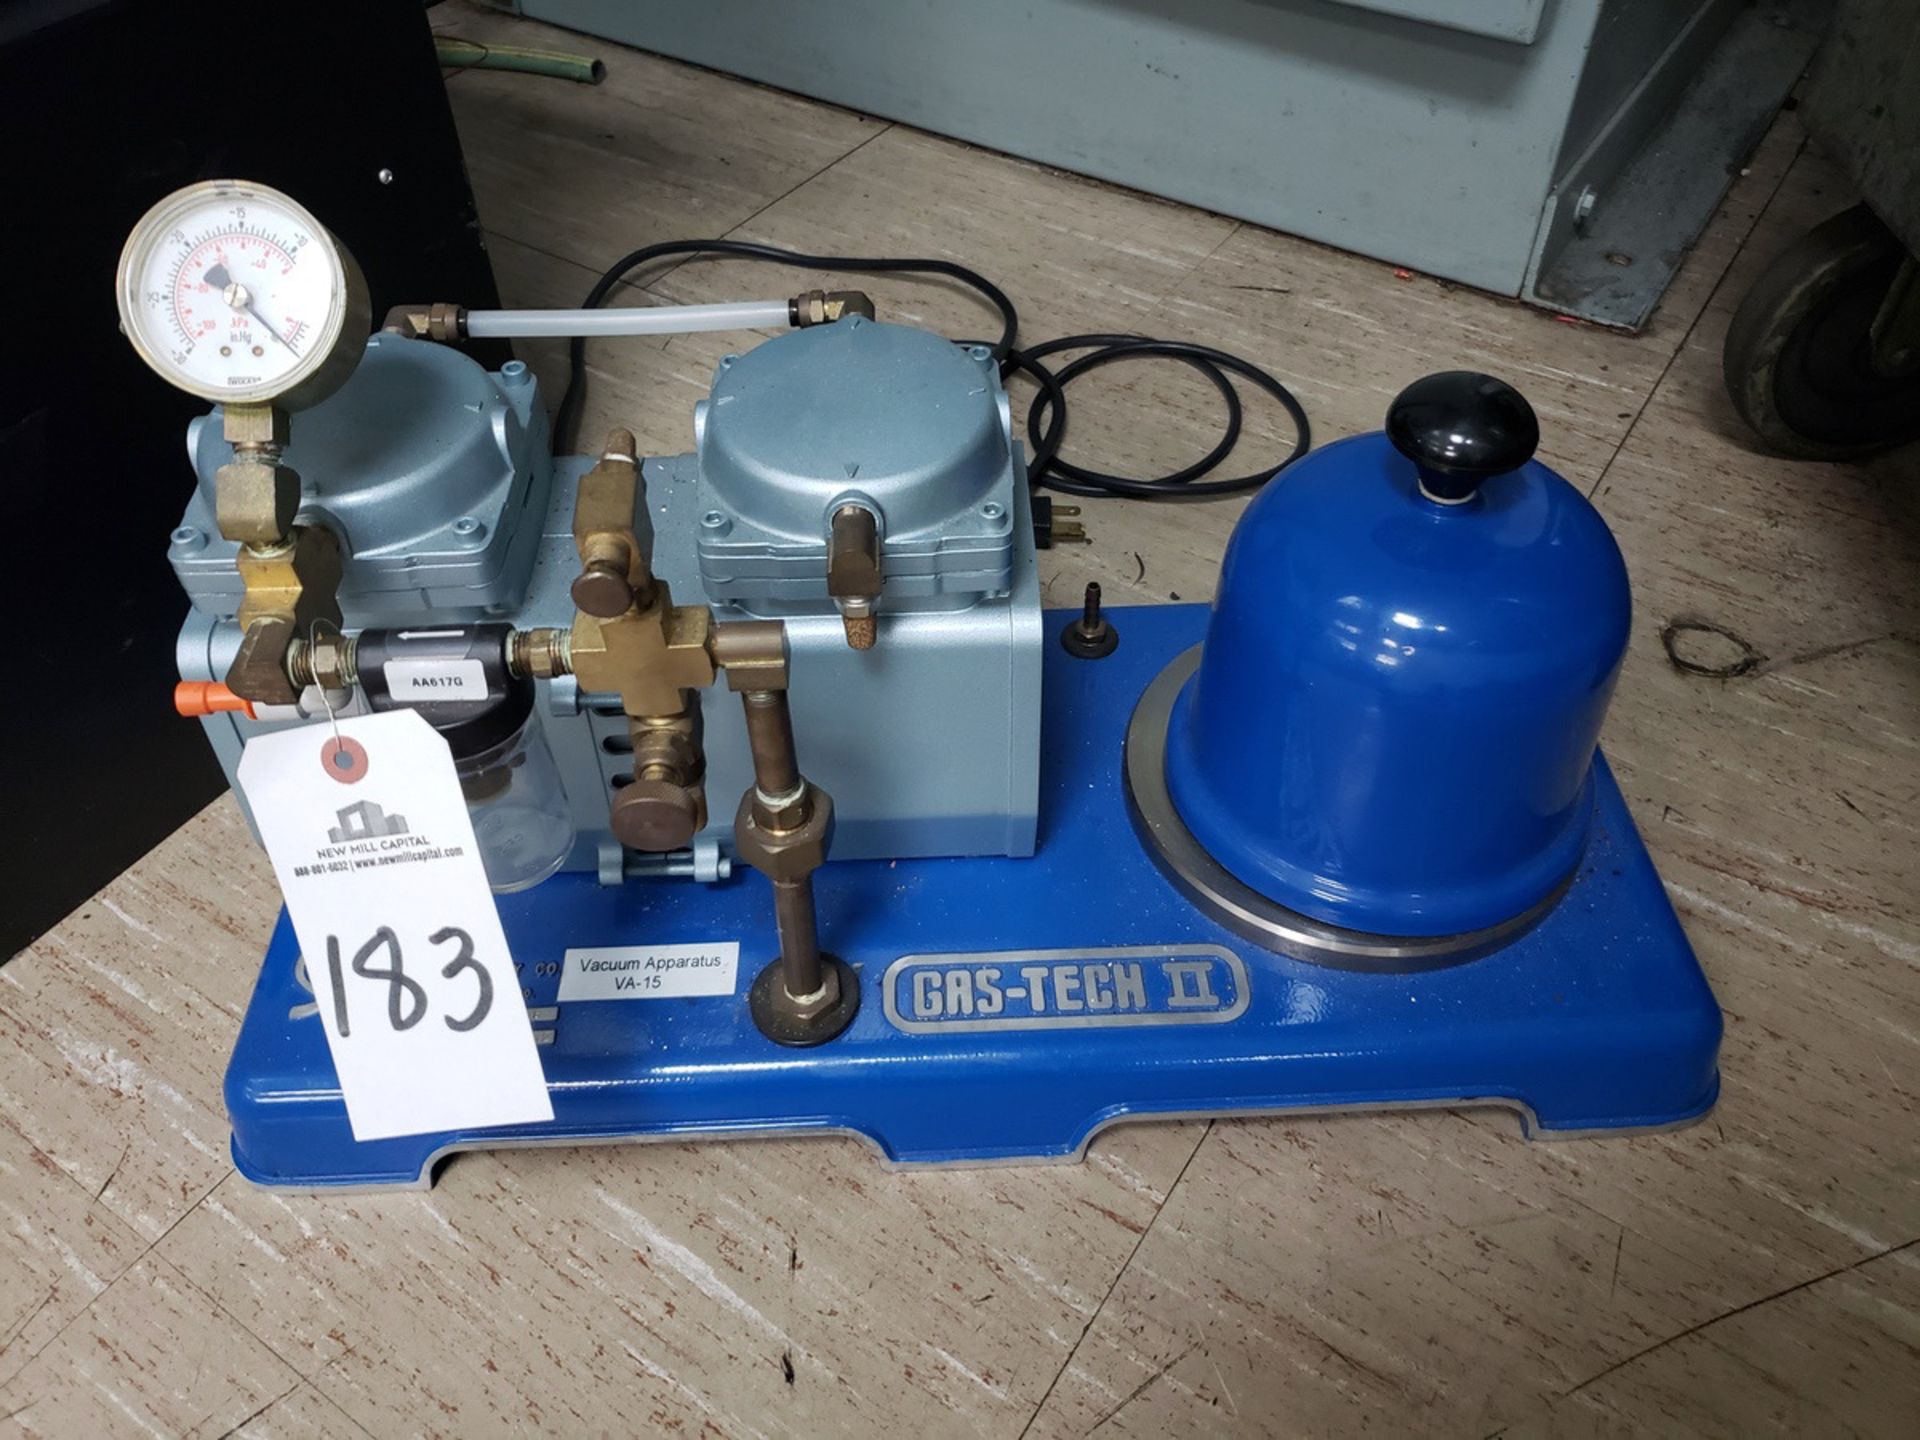 Gas-Tech II Vacuum Pump System | Rig Fee $35